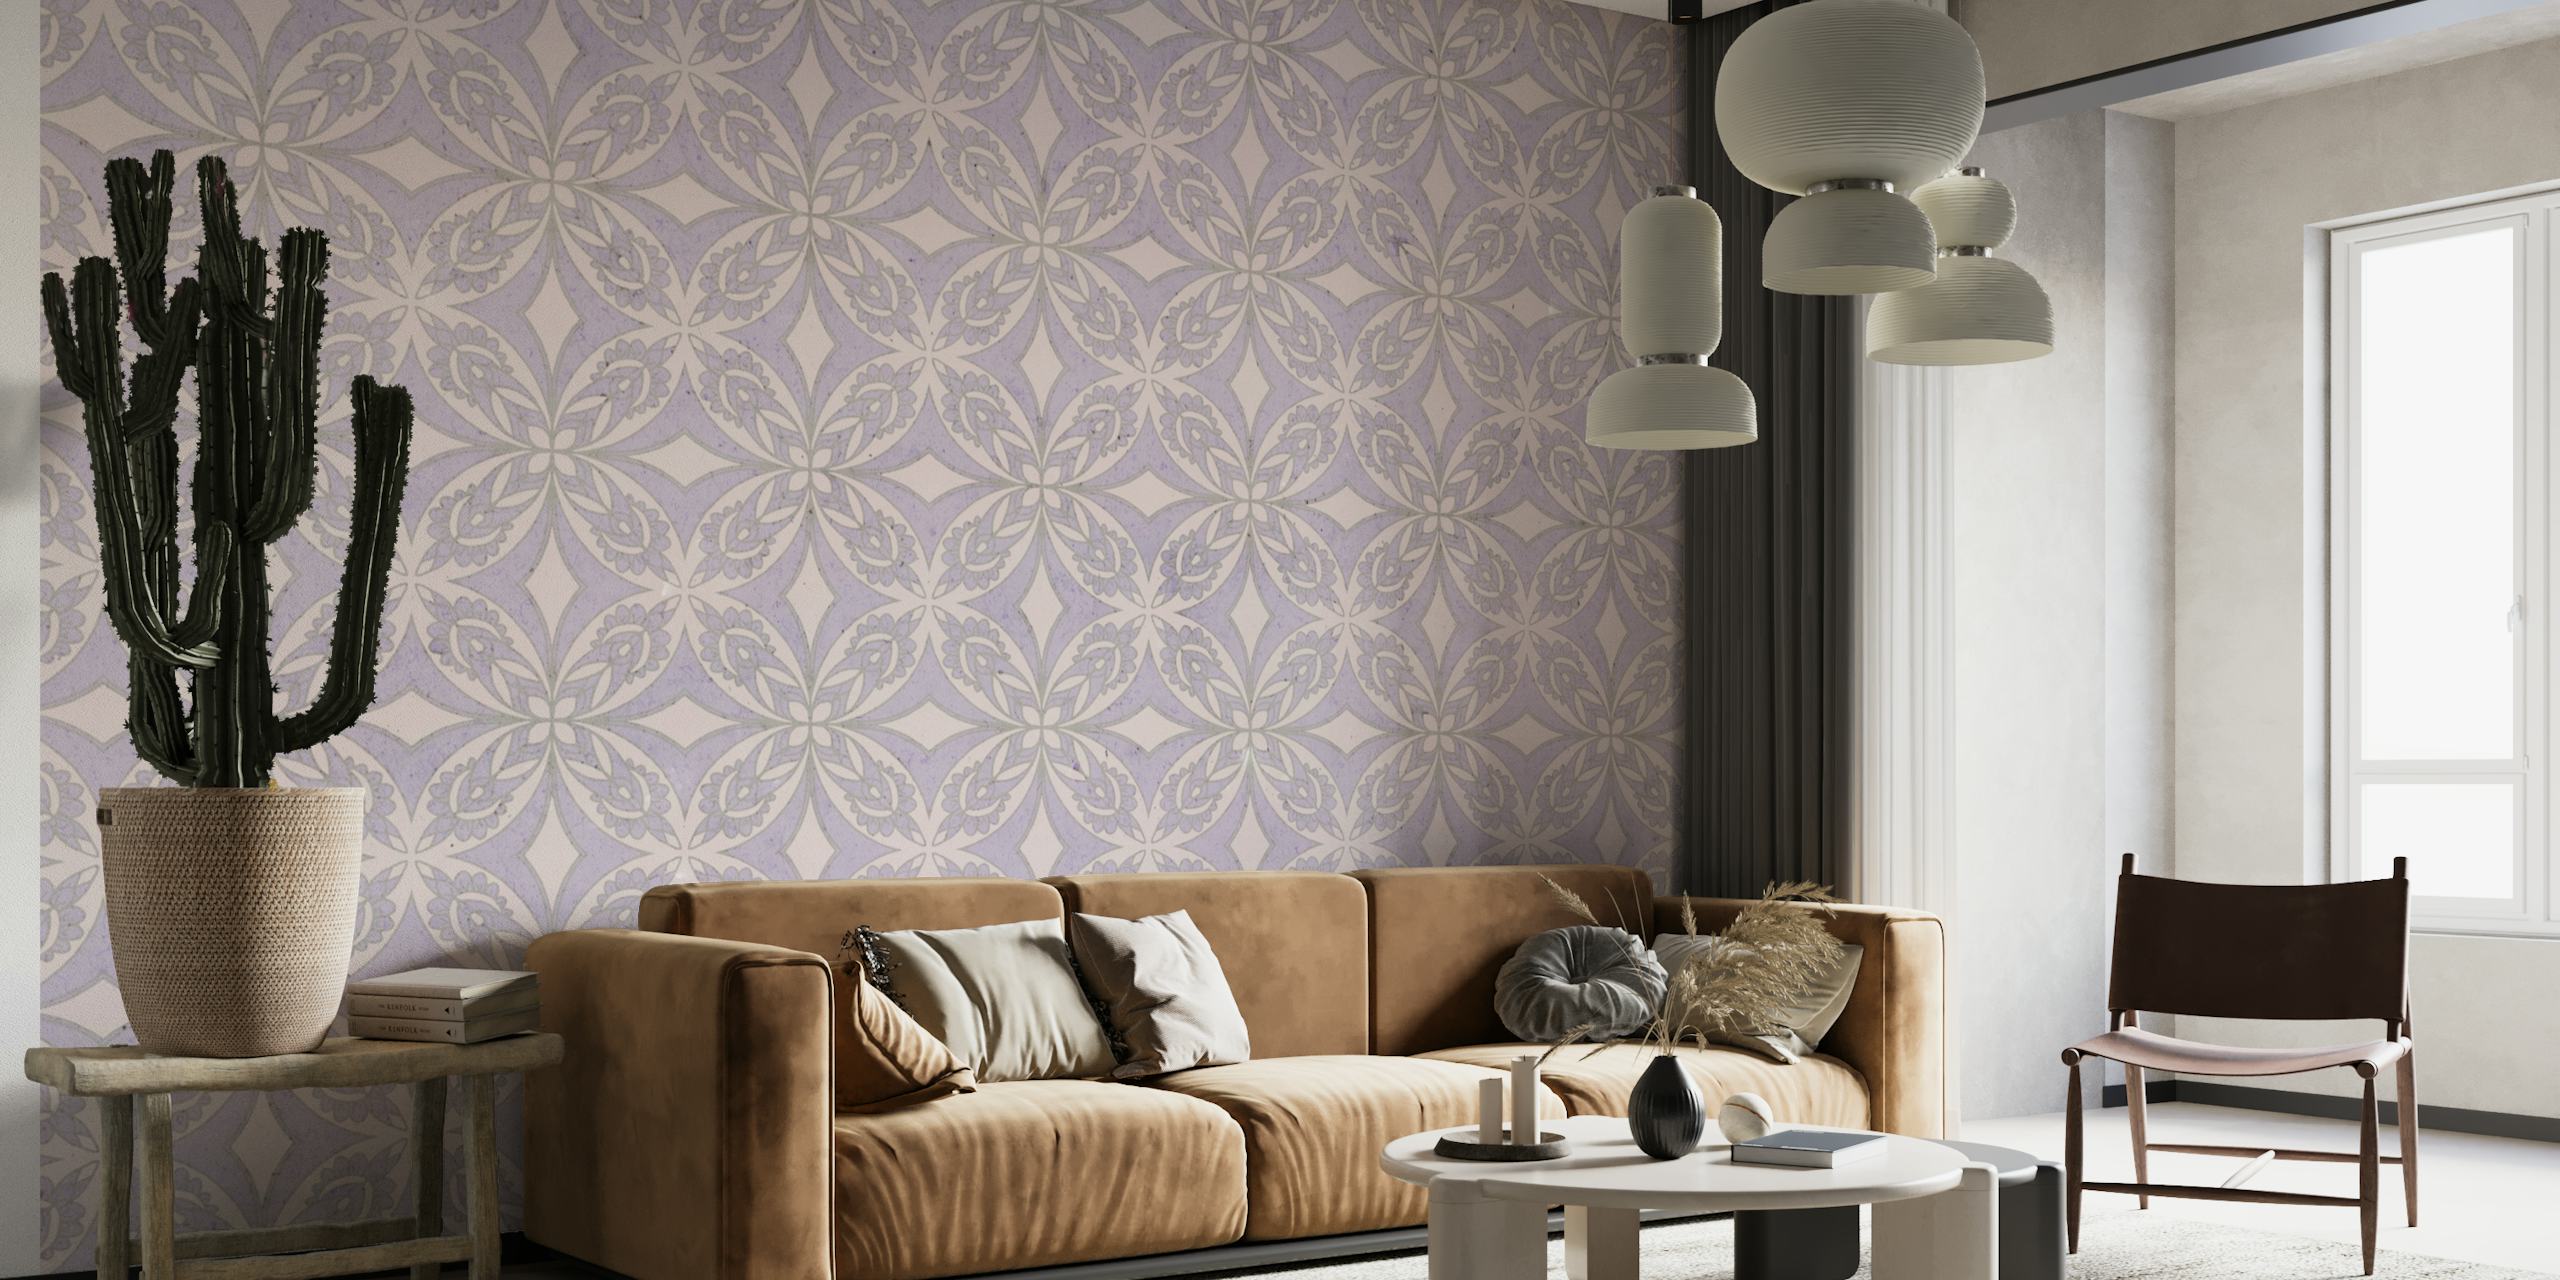 Elegante mural de pared con motivos de azulejos morados y diseños geométricos y florales